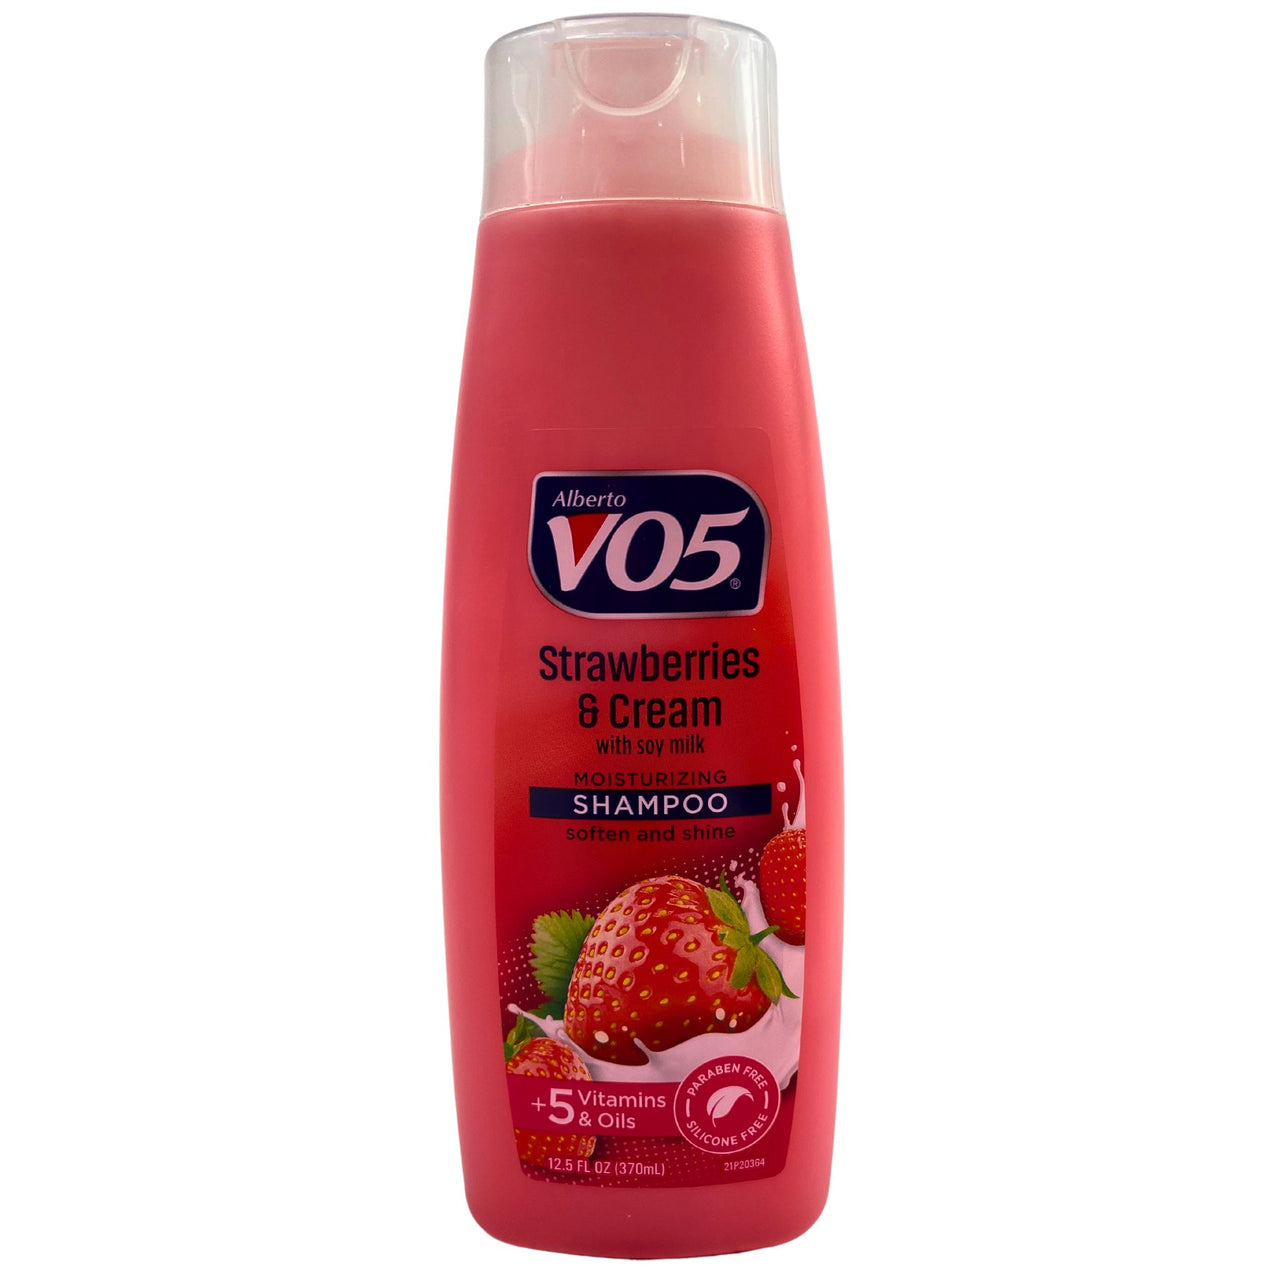 Alberto V05 Strawberries & Cream with Soy Milk Moisturizing Shampoo